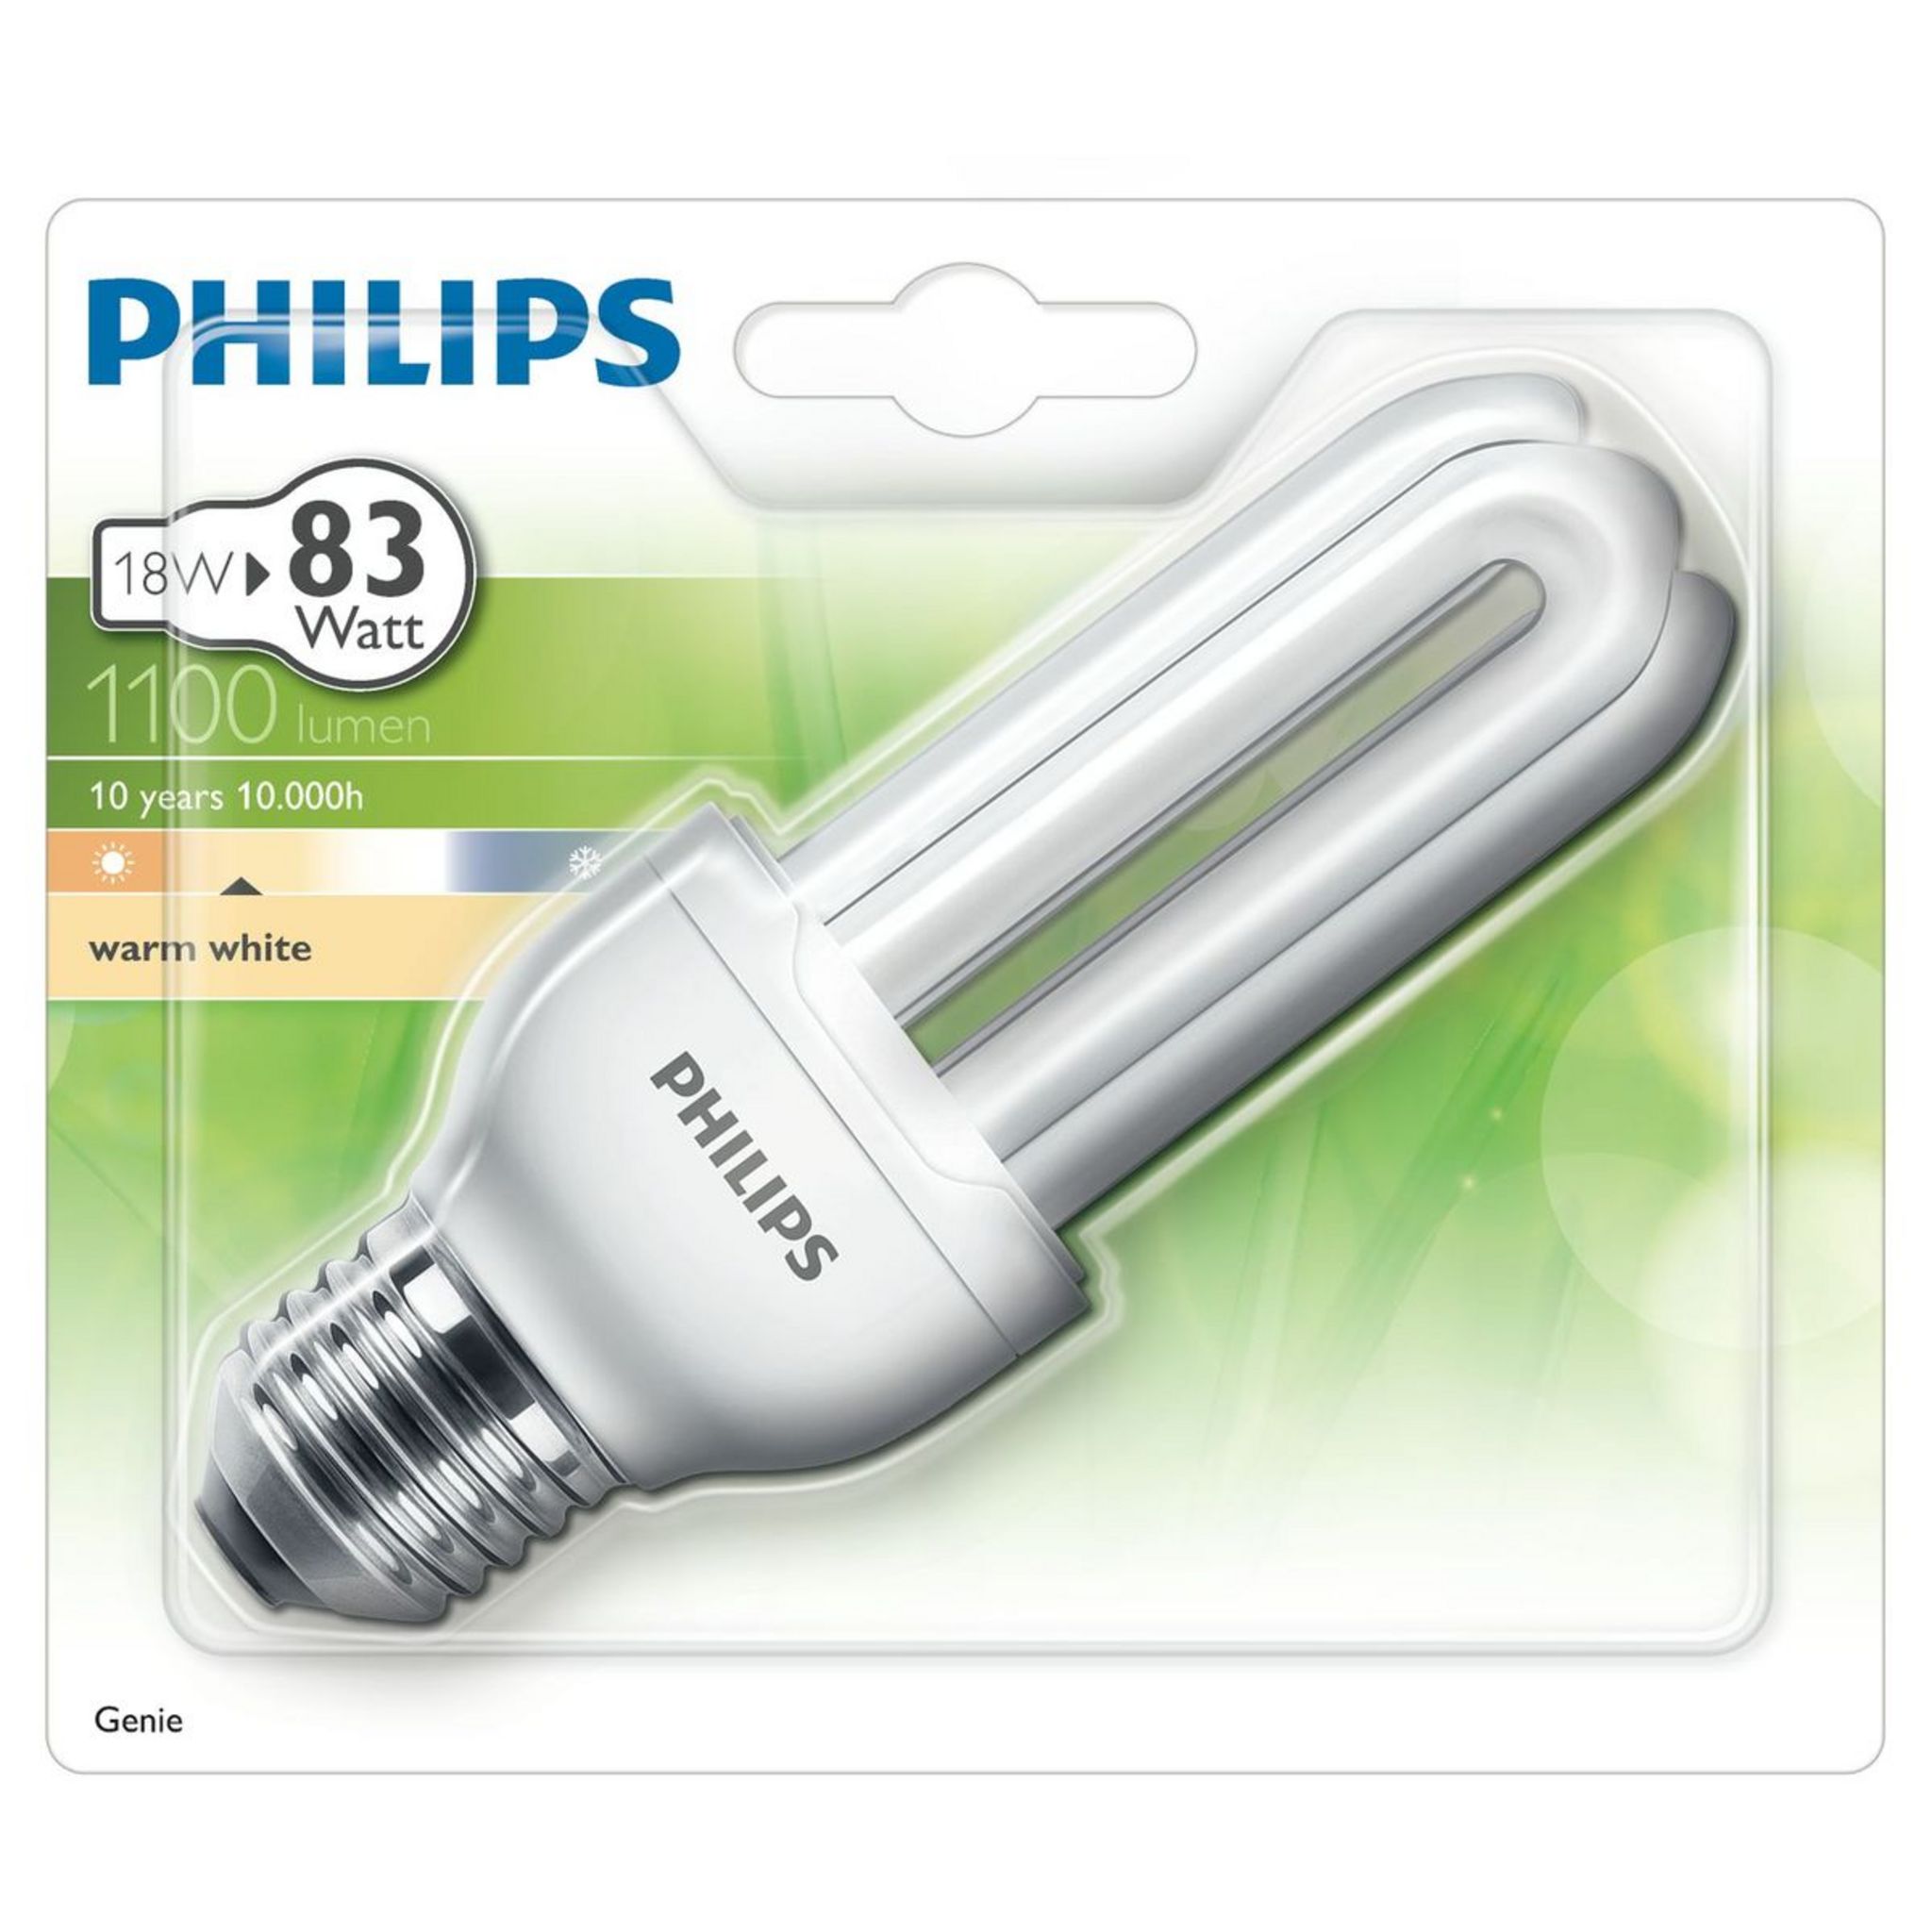 PHILIPS Ampoule génie E27 eco énergie 18w warm light 1100 lumen x1 1100  lumen 1 pièce pas cher 